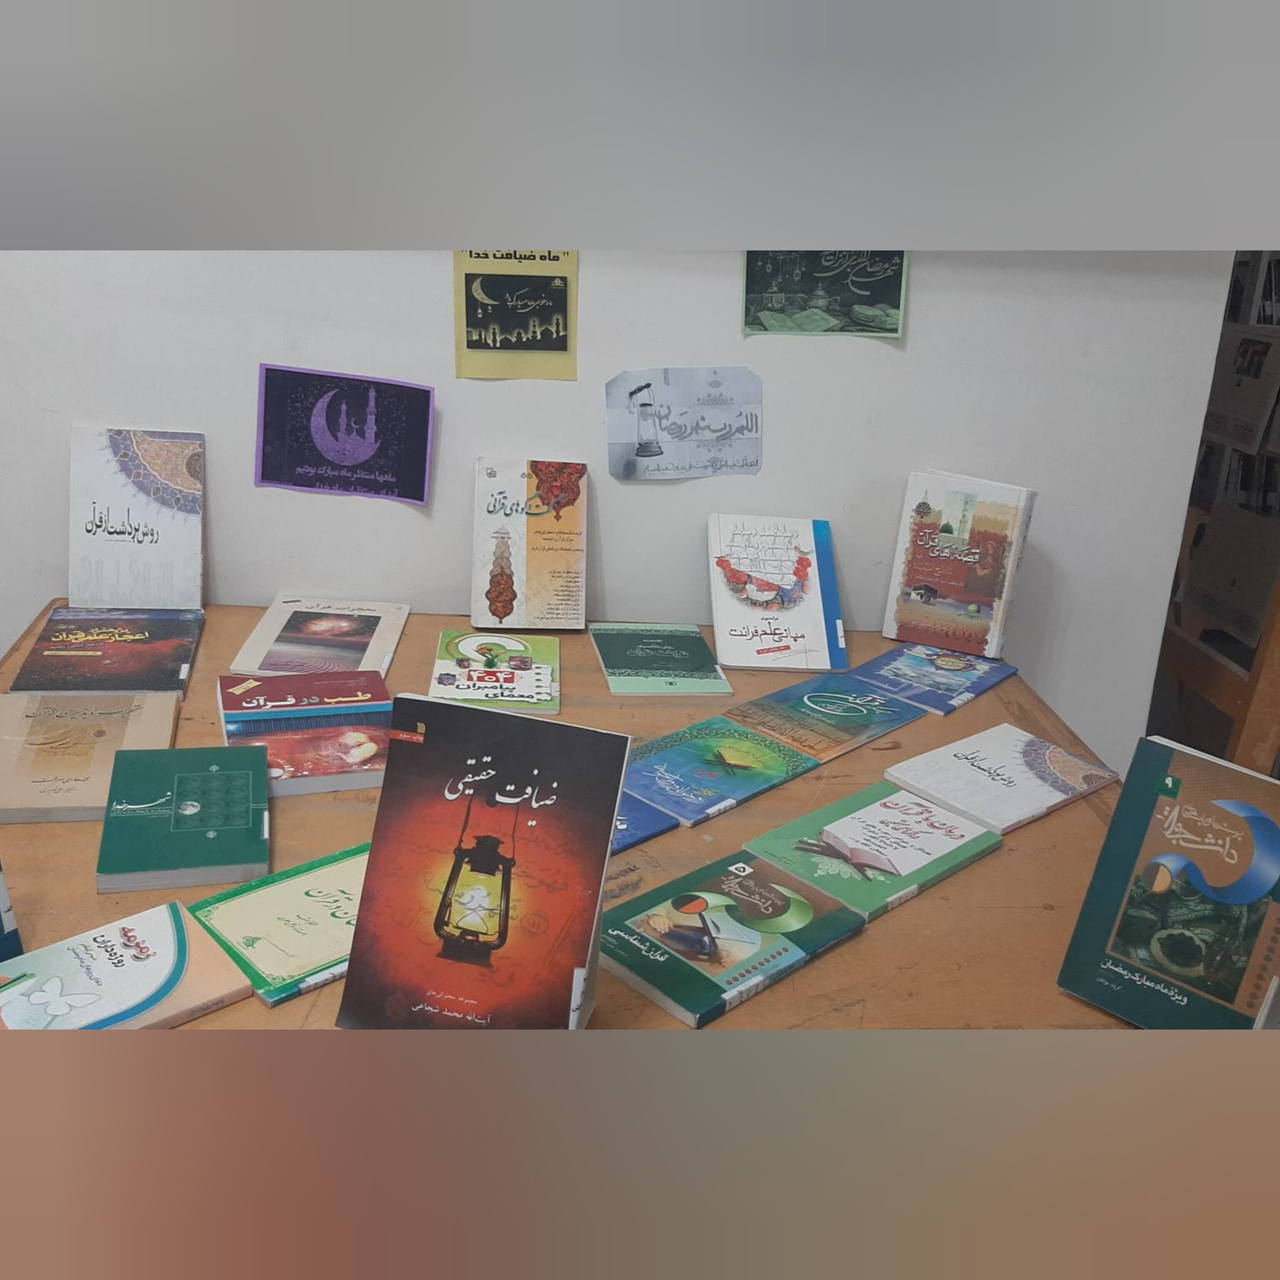 سال نو با معرفی ۴ کتاب در پارسیان جشن گرفته شد